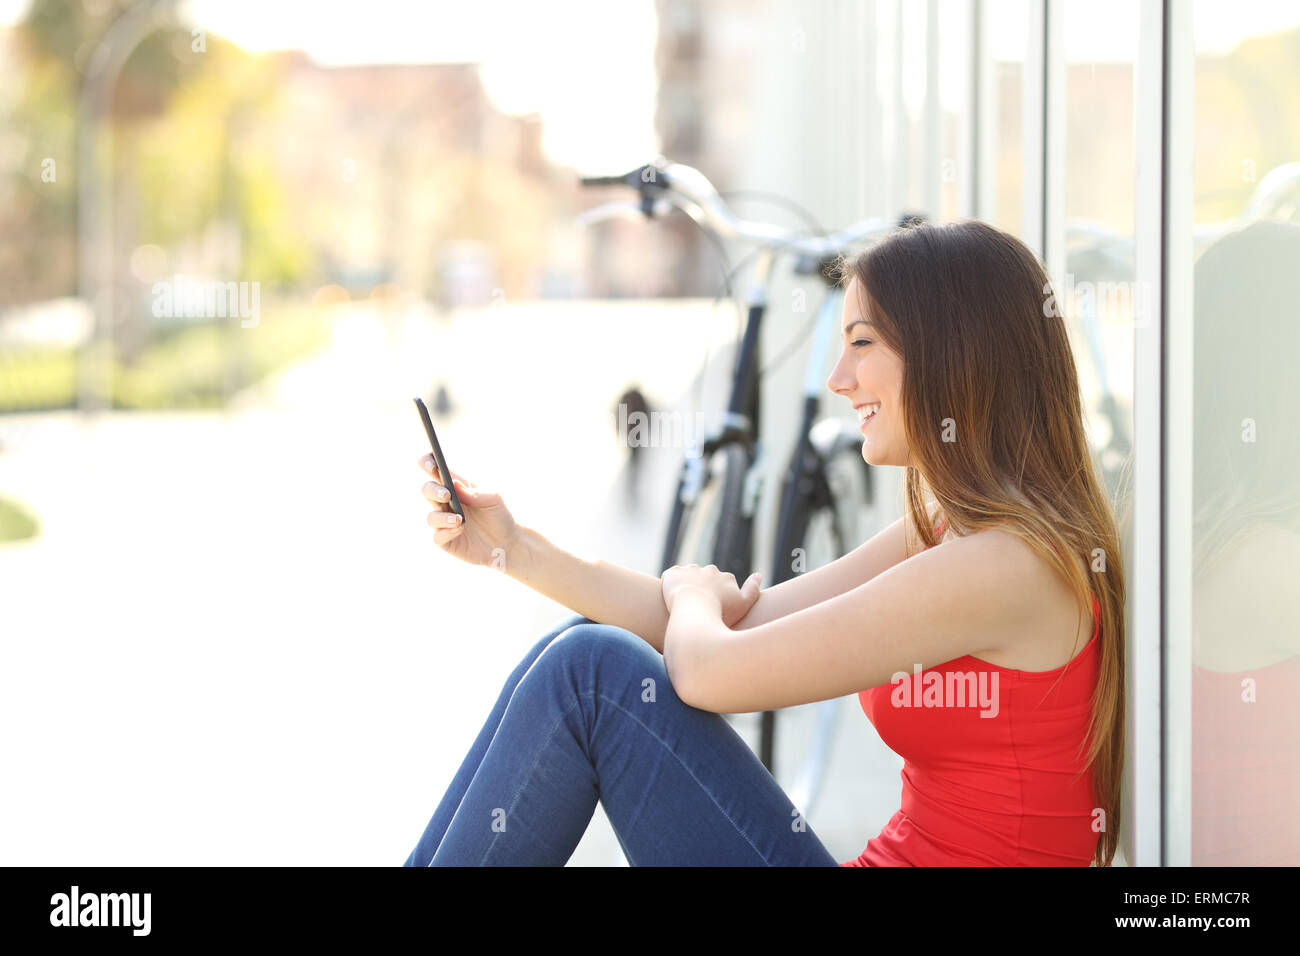 Felice ragazza seduta utilizzando un telefono cellulare in un parco accanto alla sua bicicletta Foto Stock